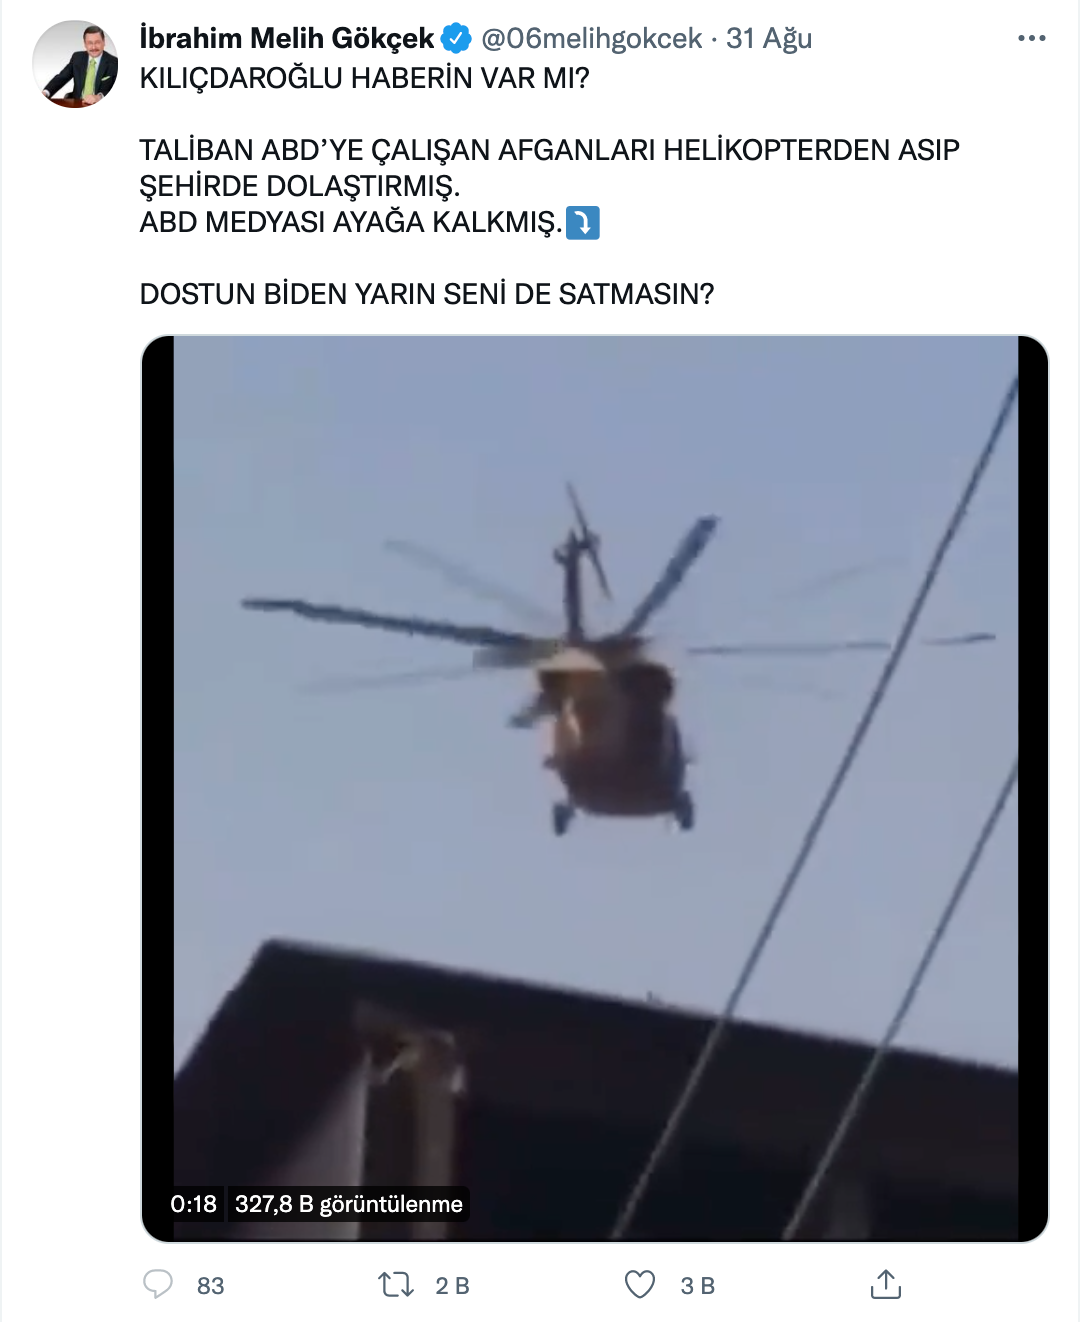 talibanin bir kisiyi helikopterden sallandirdigi iddiasi